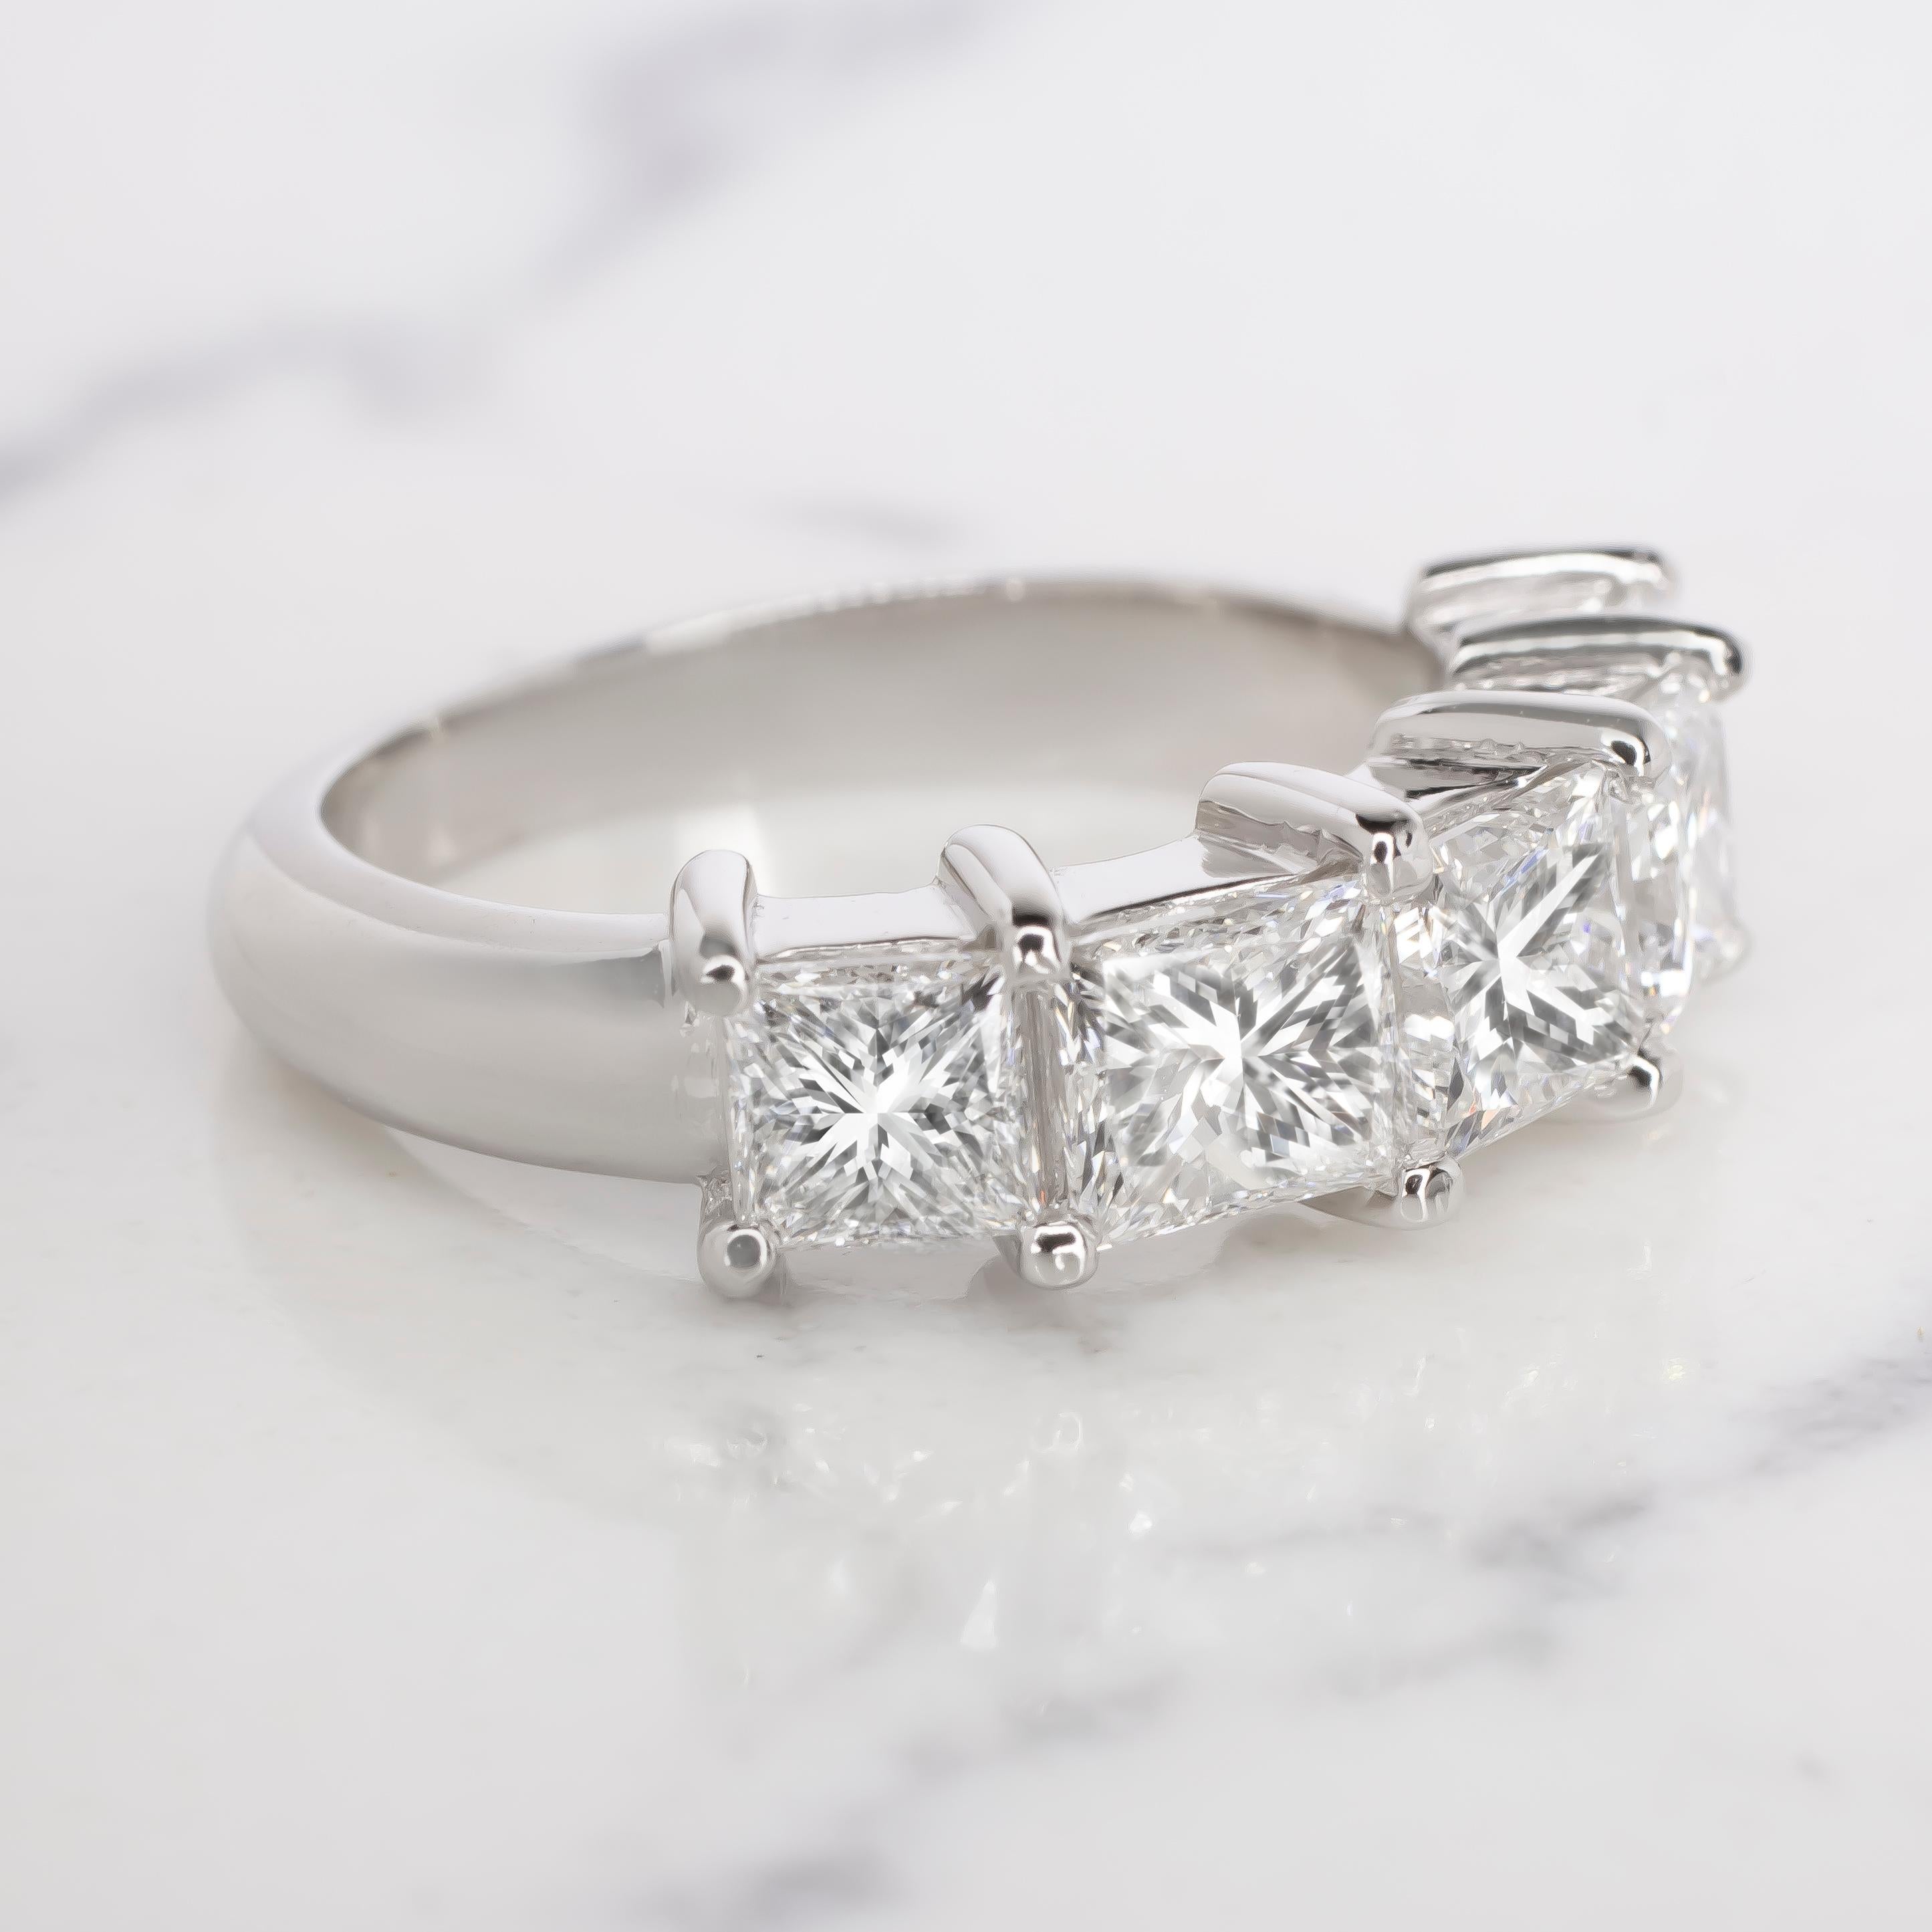 1 carat round brilliant cut diamond ring